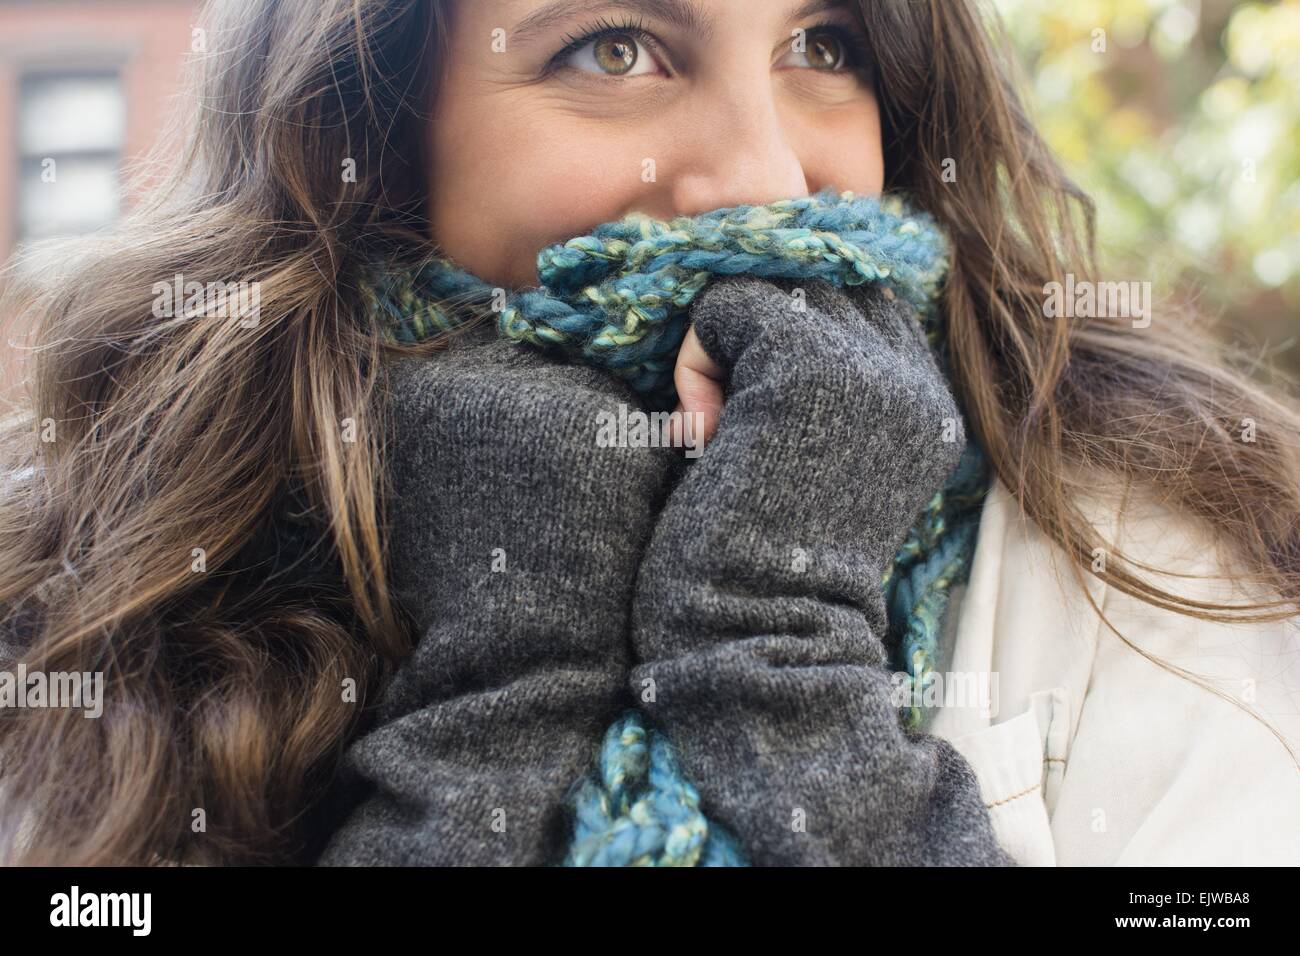 USA, l'État de New York, New York City, Brooklyn, jeune femme cachant son  visage derrière l'écharpe Photo Stock - Alamy